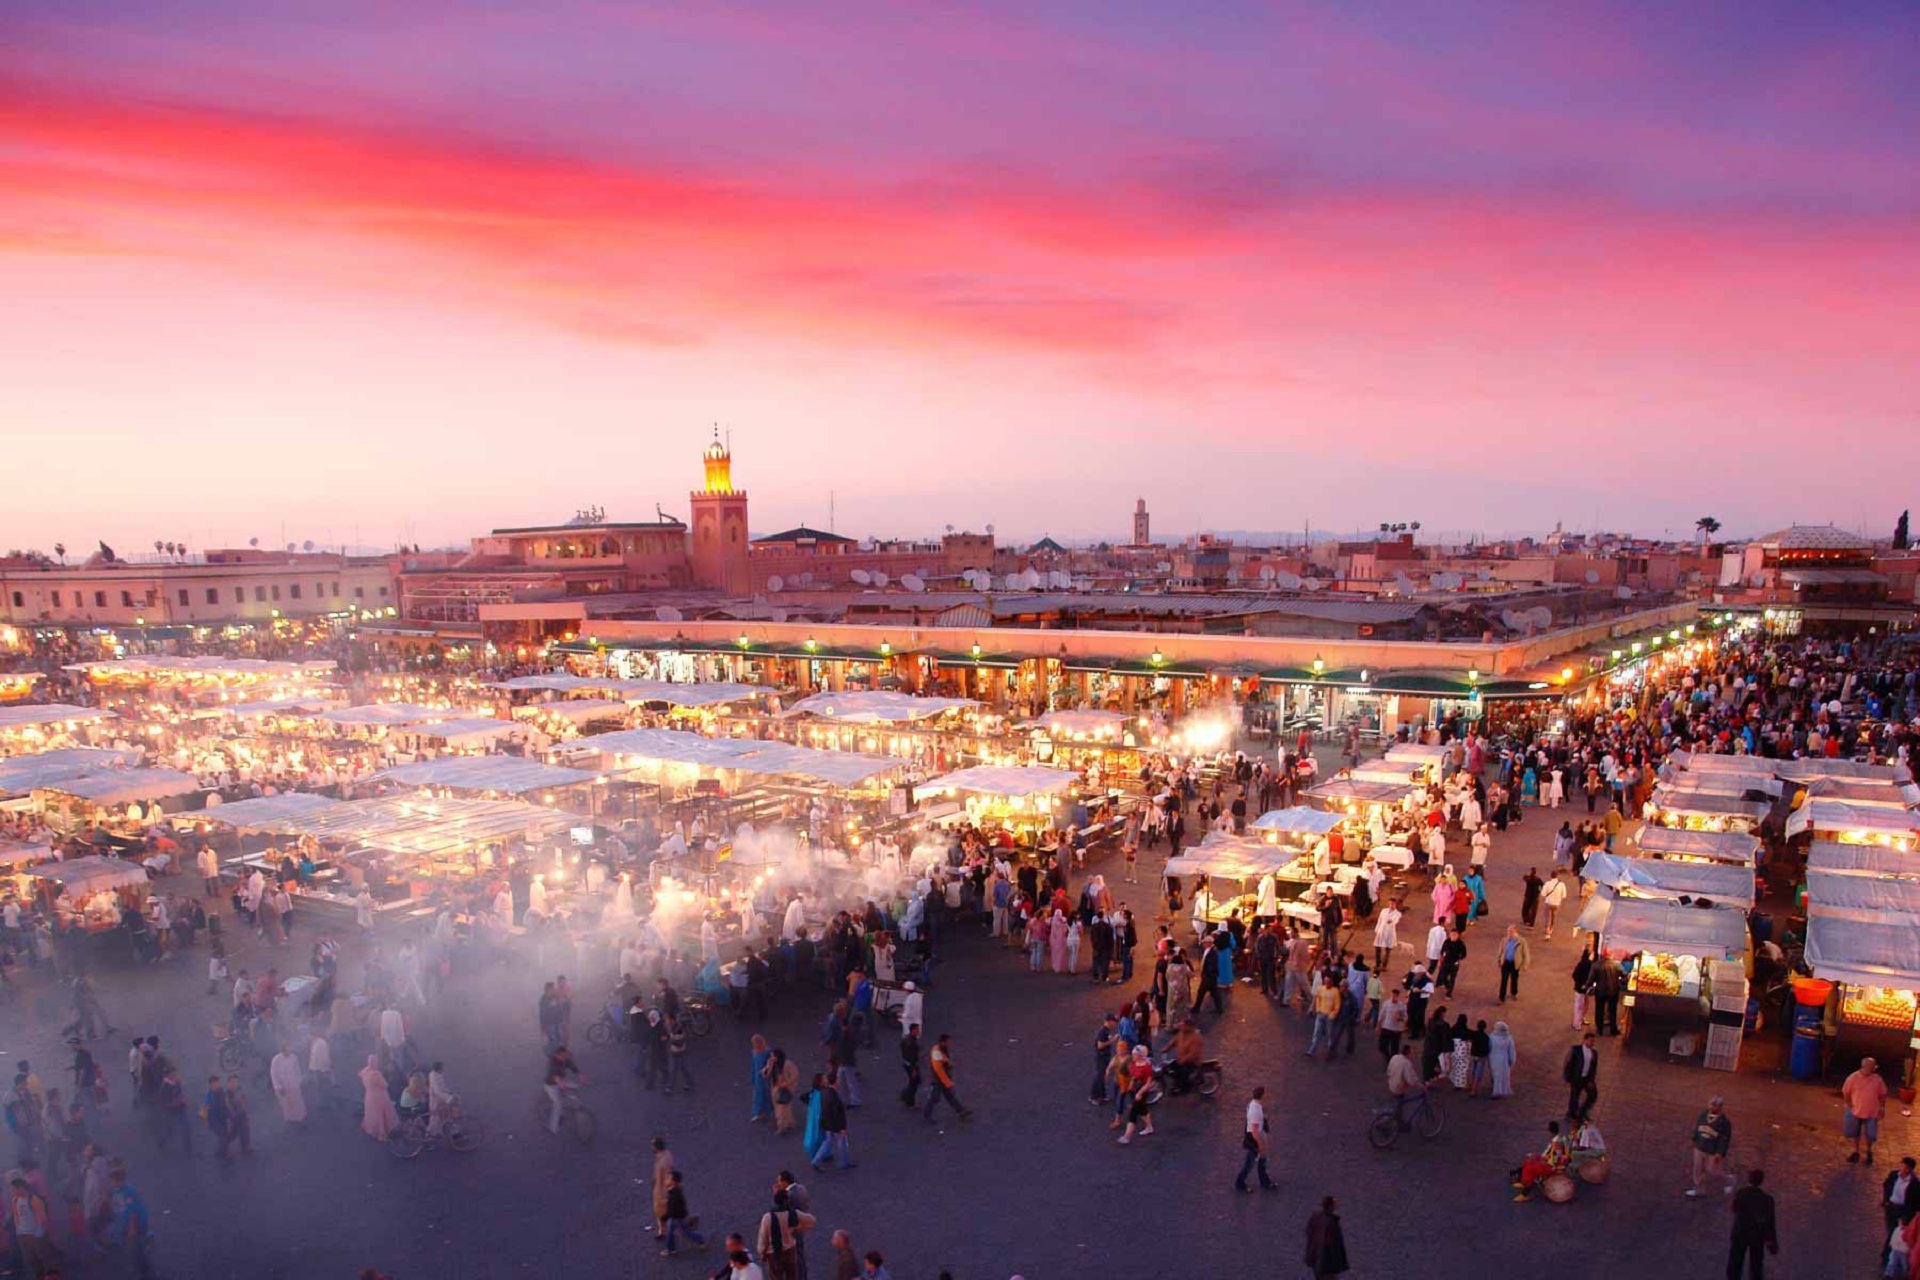 عکس بازار فوق العاده زیبا و شلوغ مراکش با کیفیت ویژه